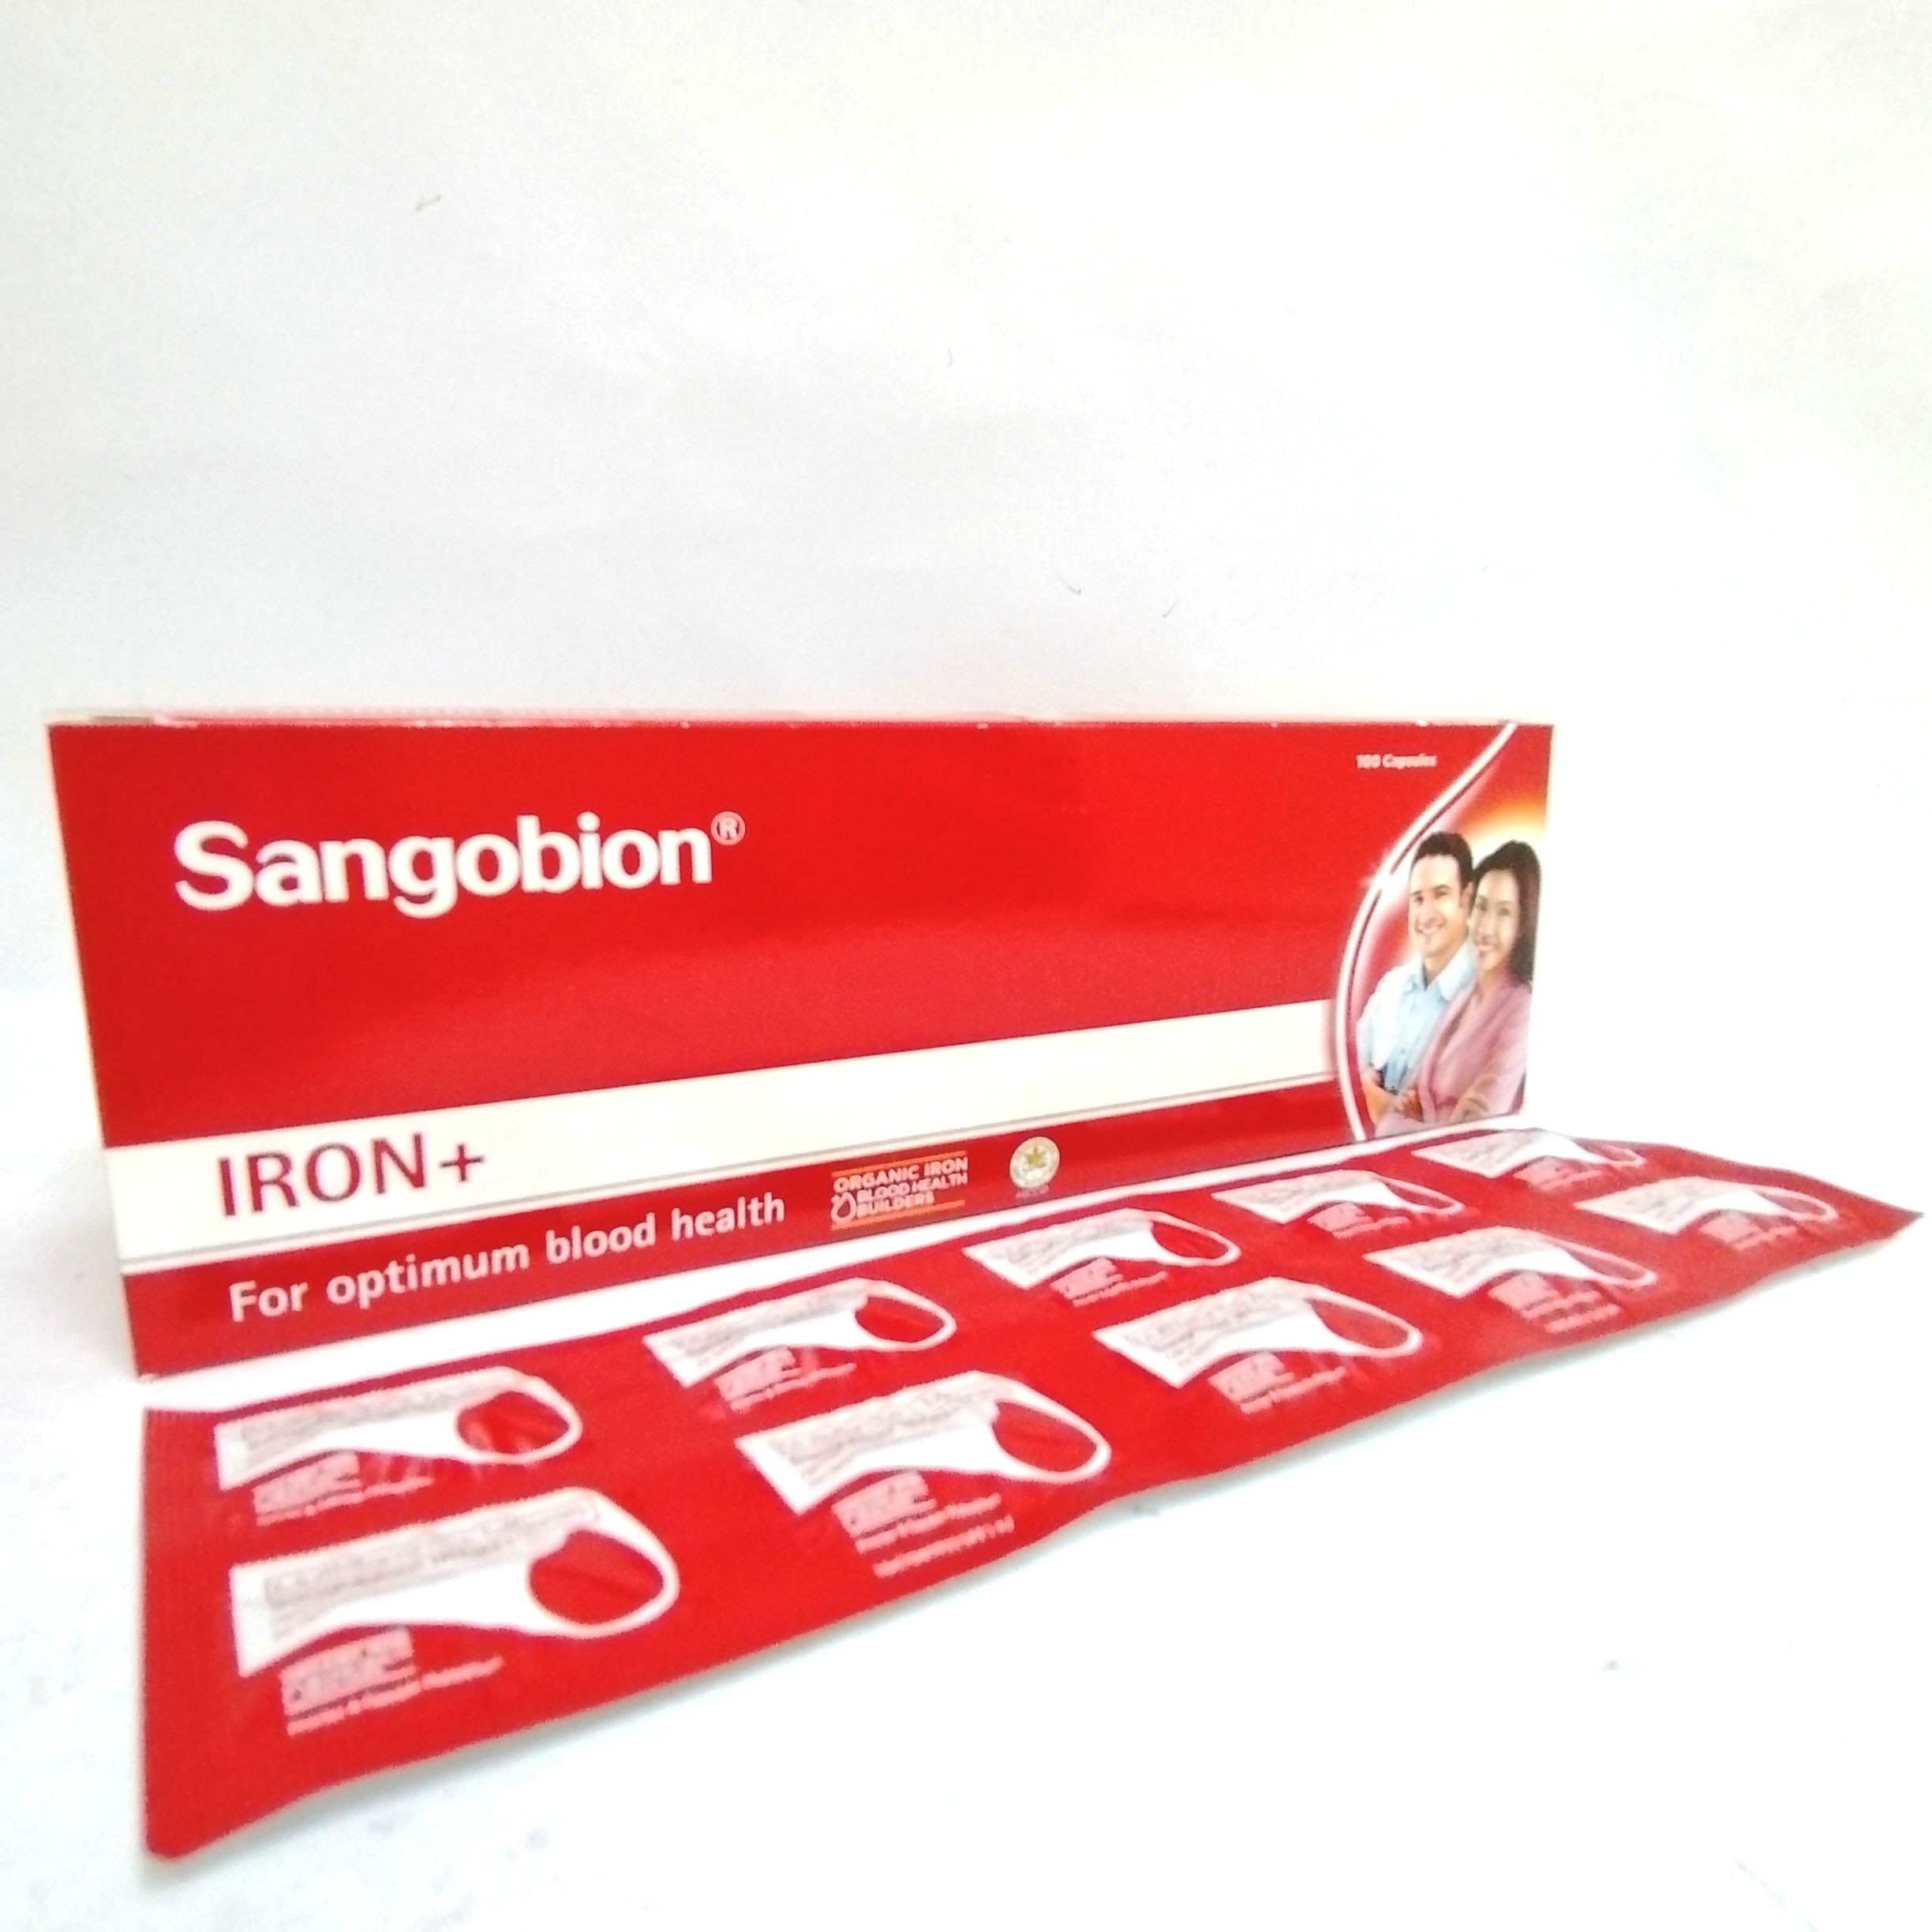 Sangobion